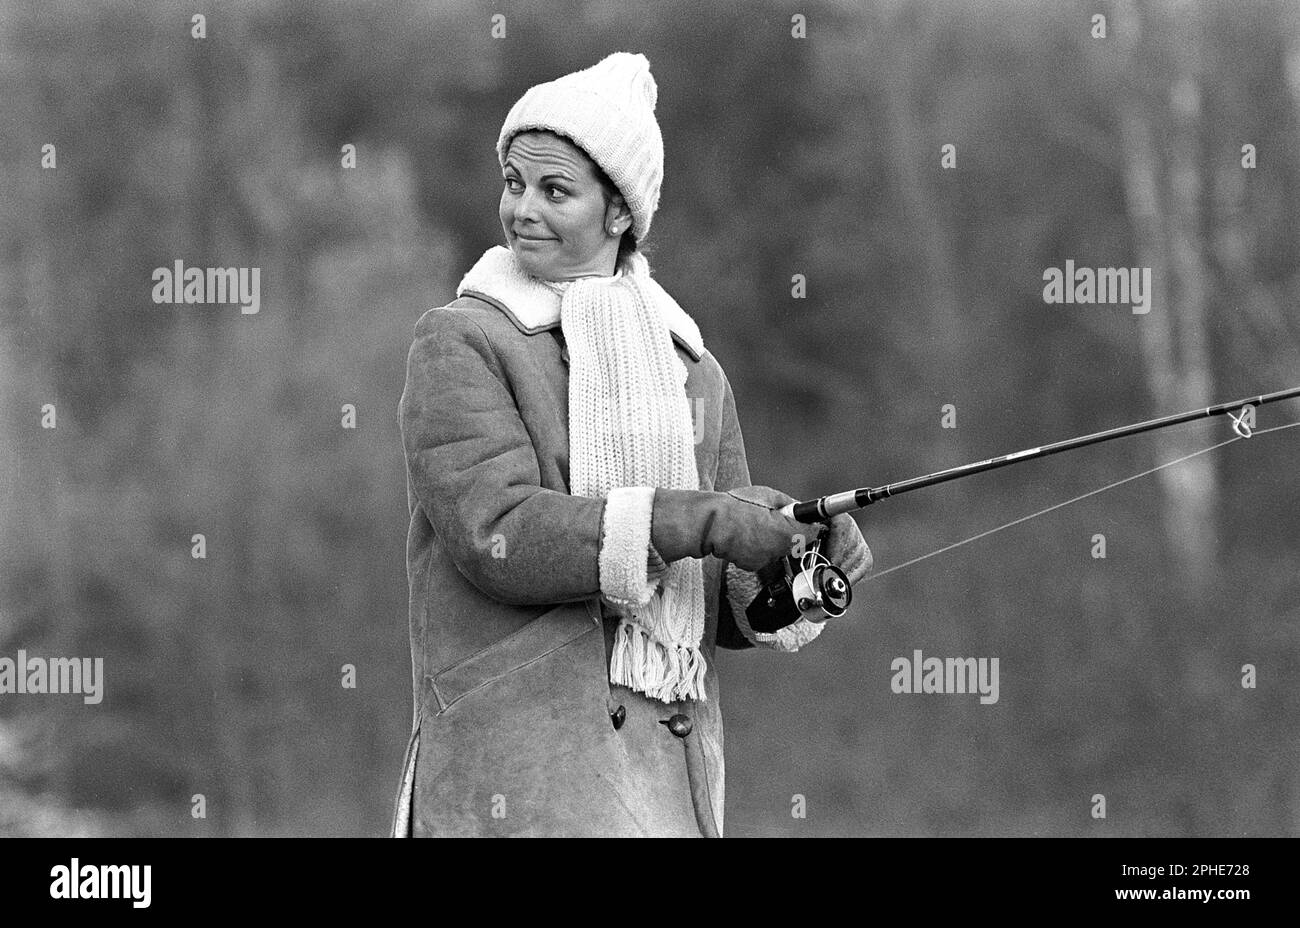 Regina Silvia di Svezia. Nato il 23 dicembre 1943. Moglie del re Carlo XVI Gustaf. Immagine 1976 durante la pesca. Foto Stock